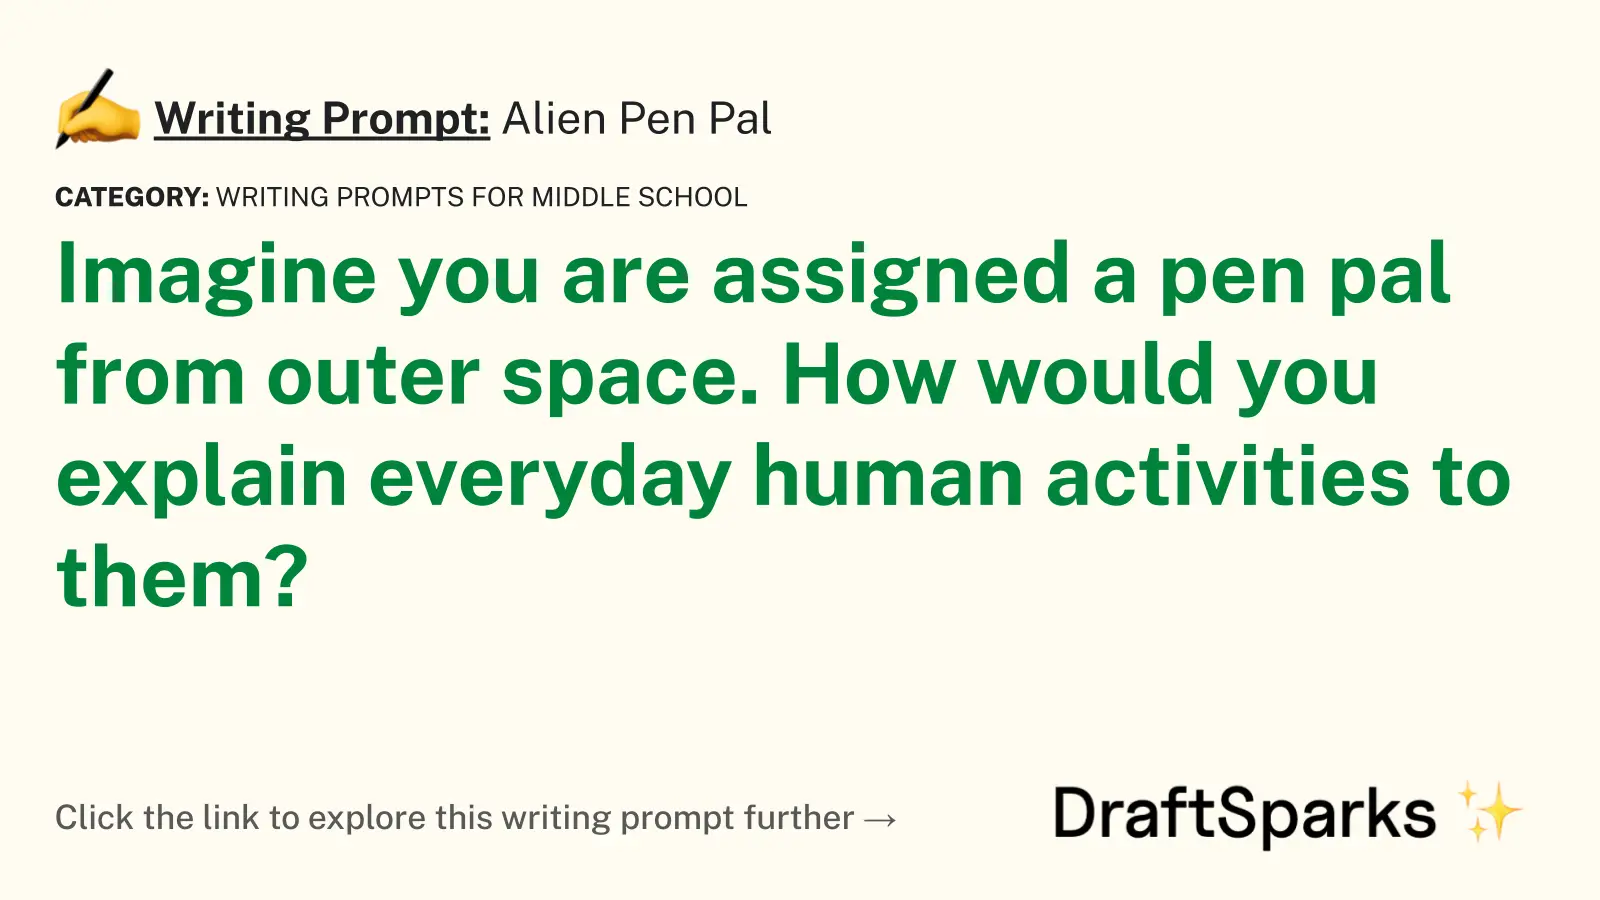 Alien Pen Pal